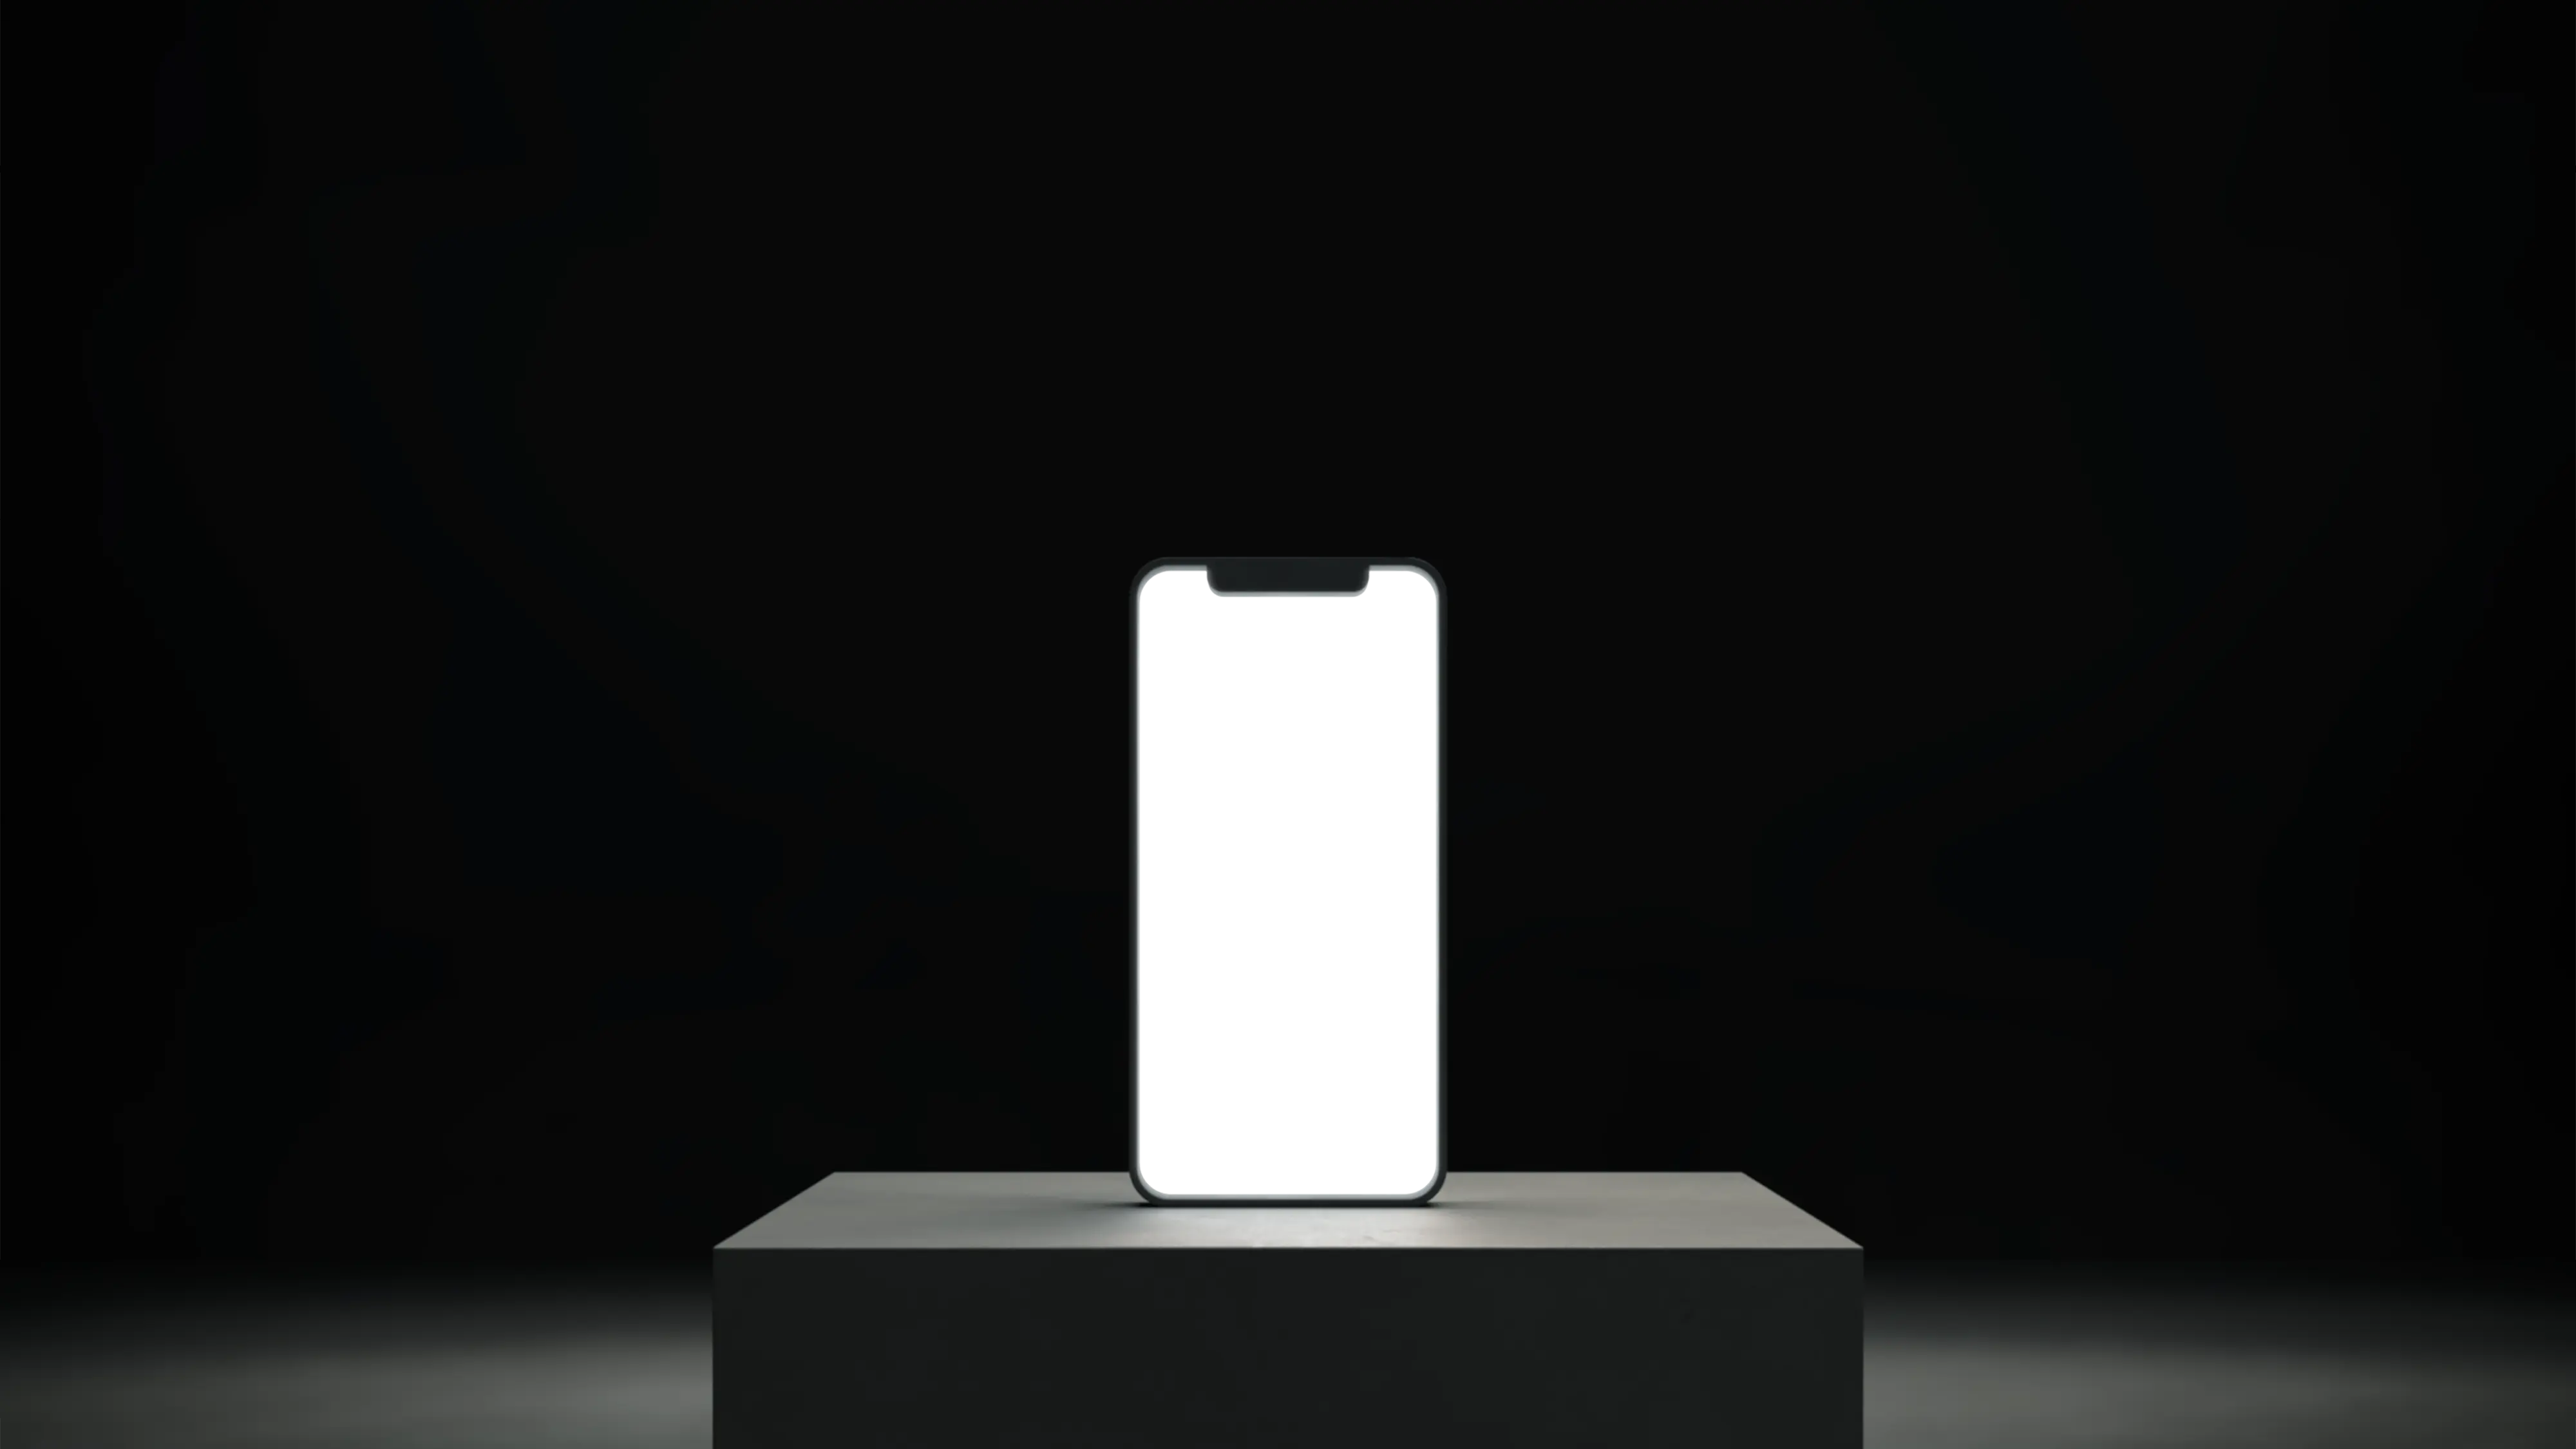 Smartphone sur socle avec écran blanc allumé.